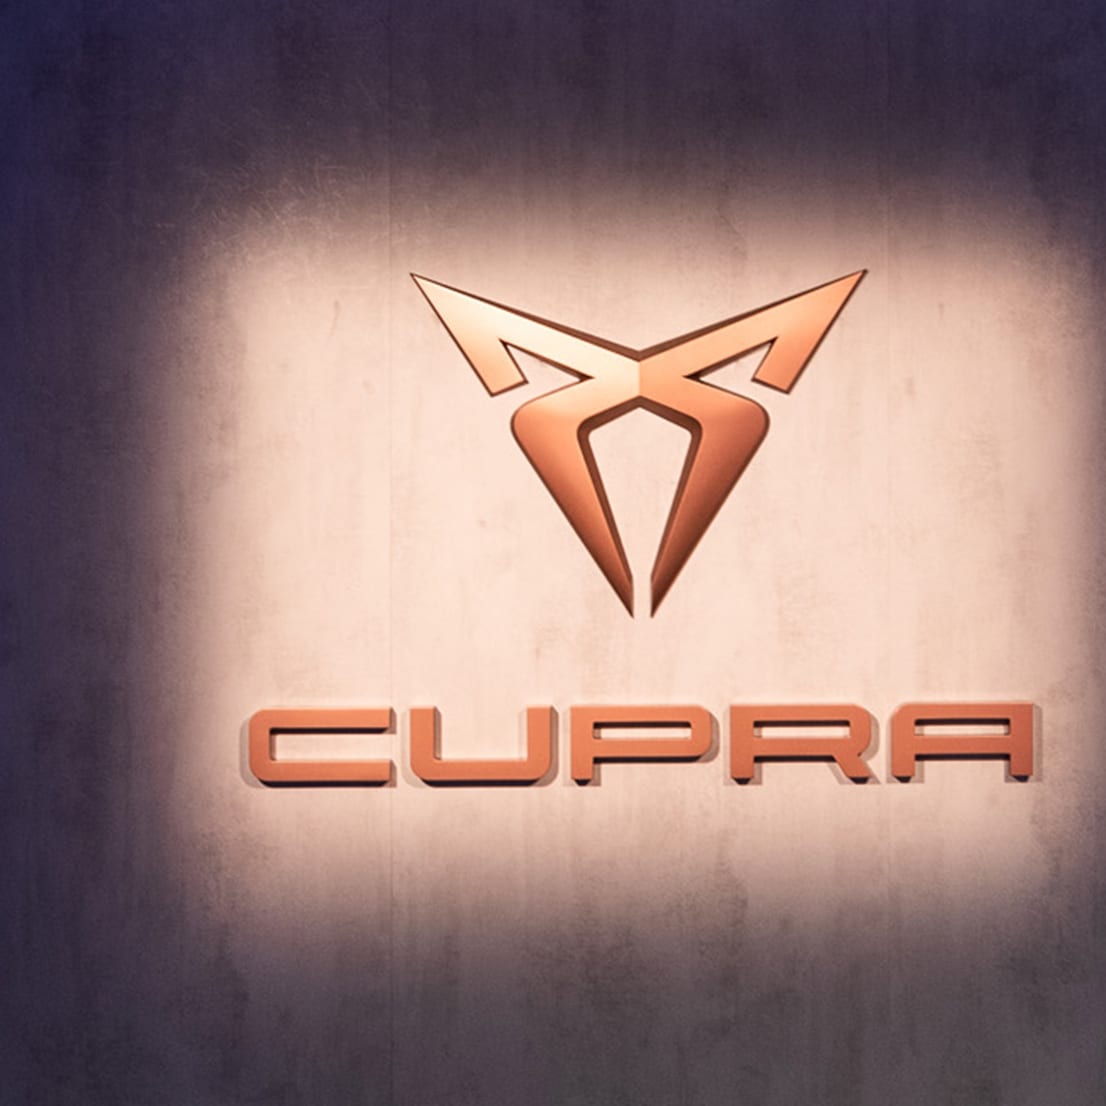 CUPRA logo on a wall